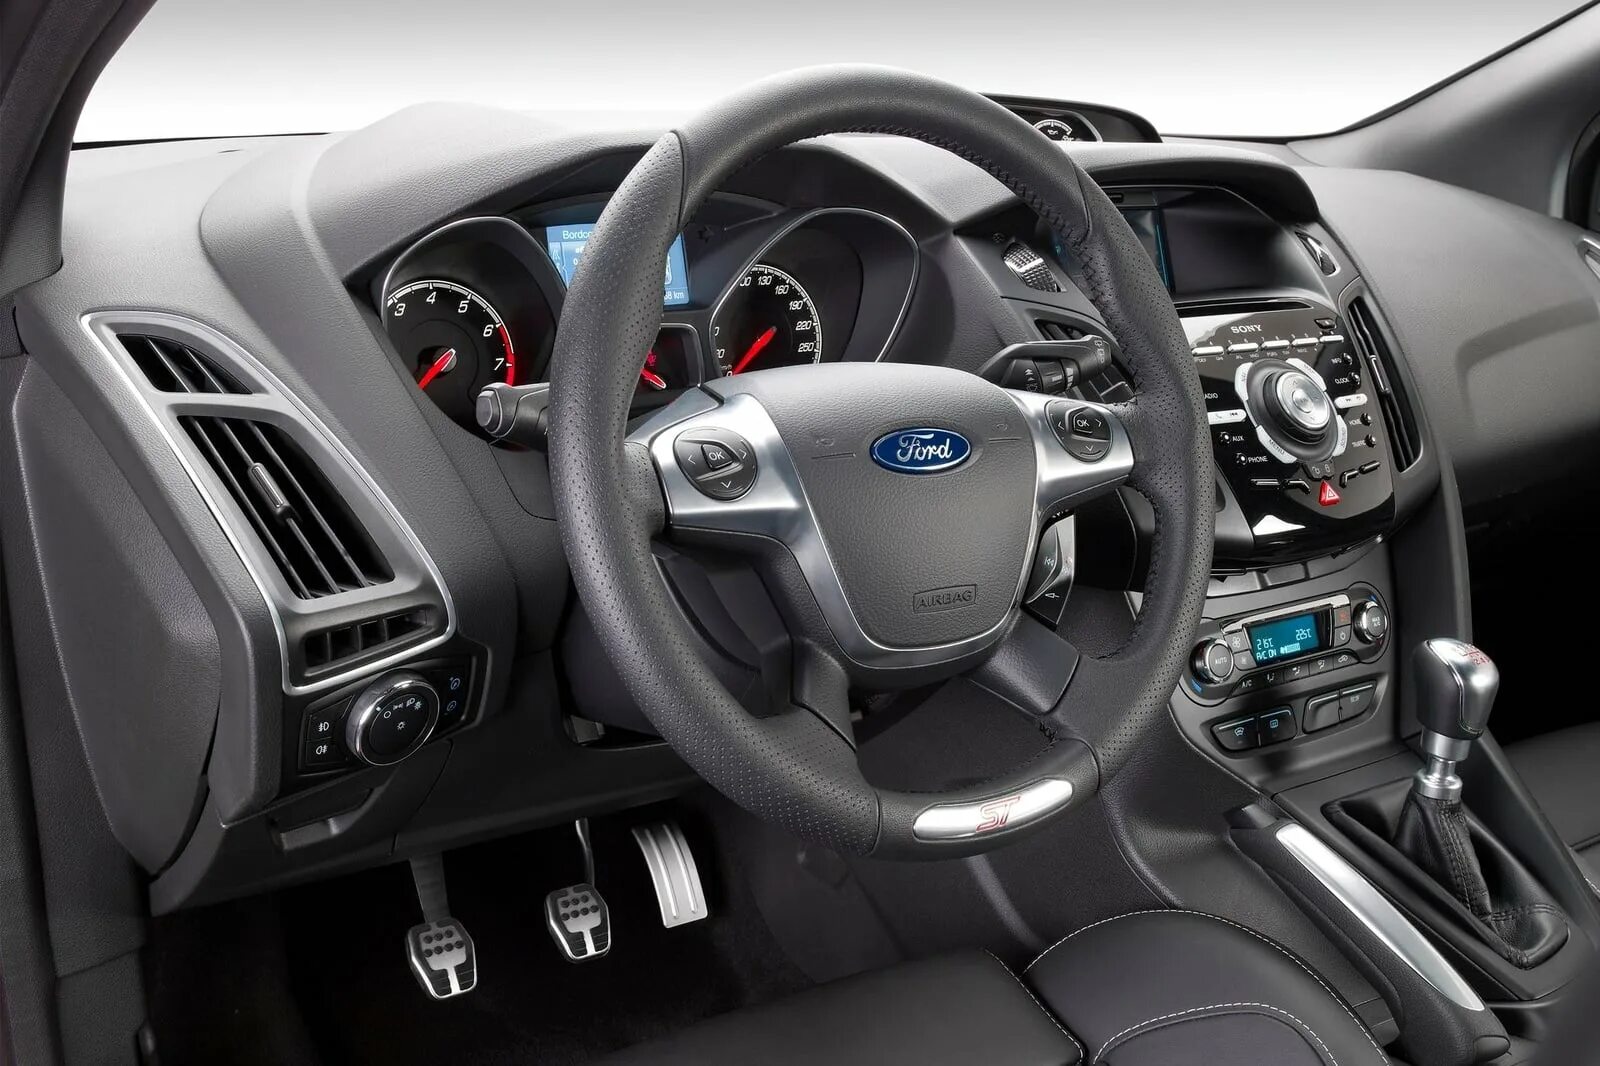 Ford Focus 3 хэтчбек салон. Форд фокус 3 хэтчбек 2012 салон. Ford Focus 2012. Форд фокус 3 салон. Форд хэтчбек салон